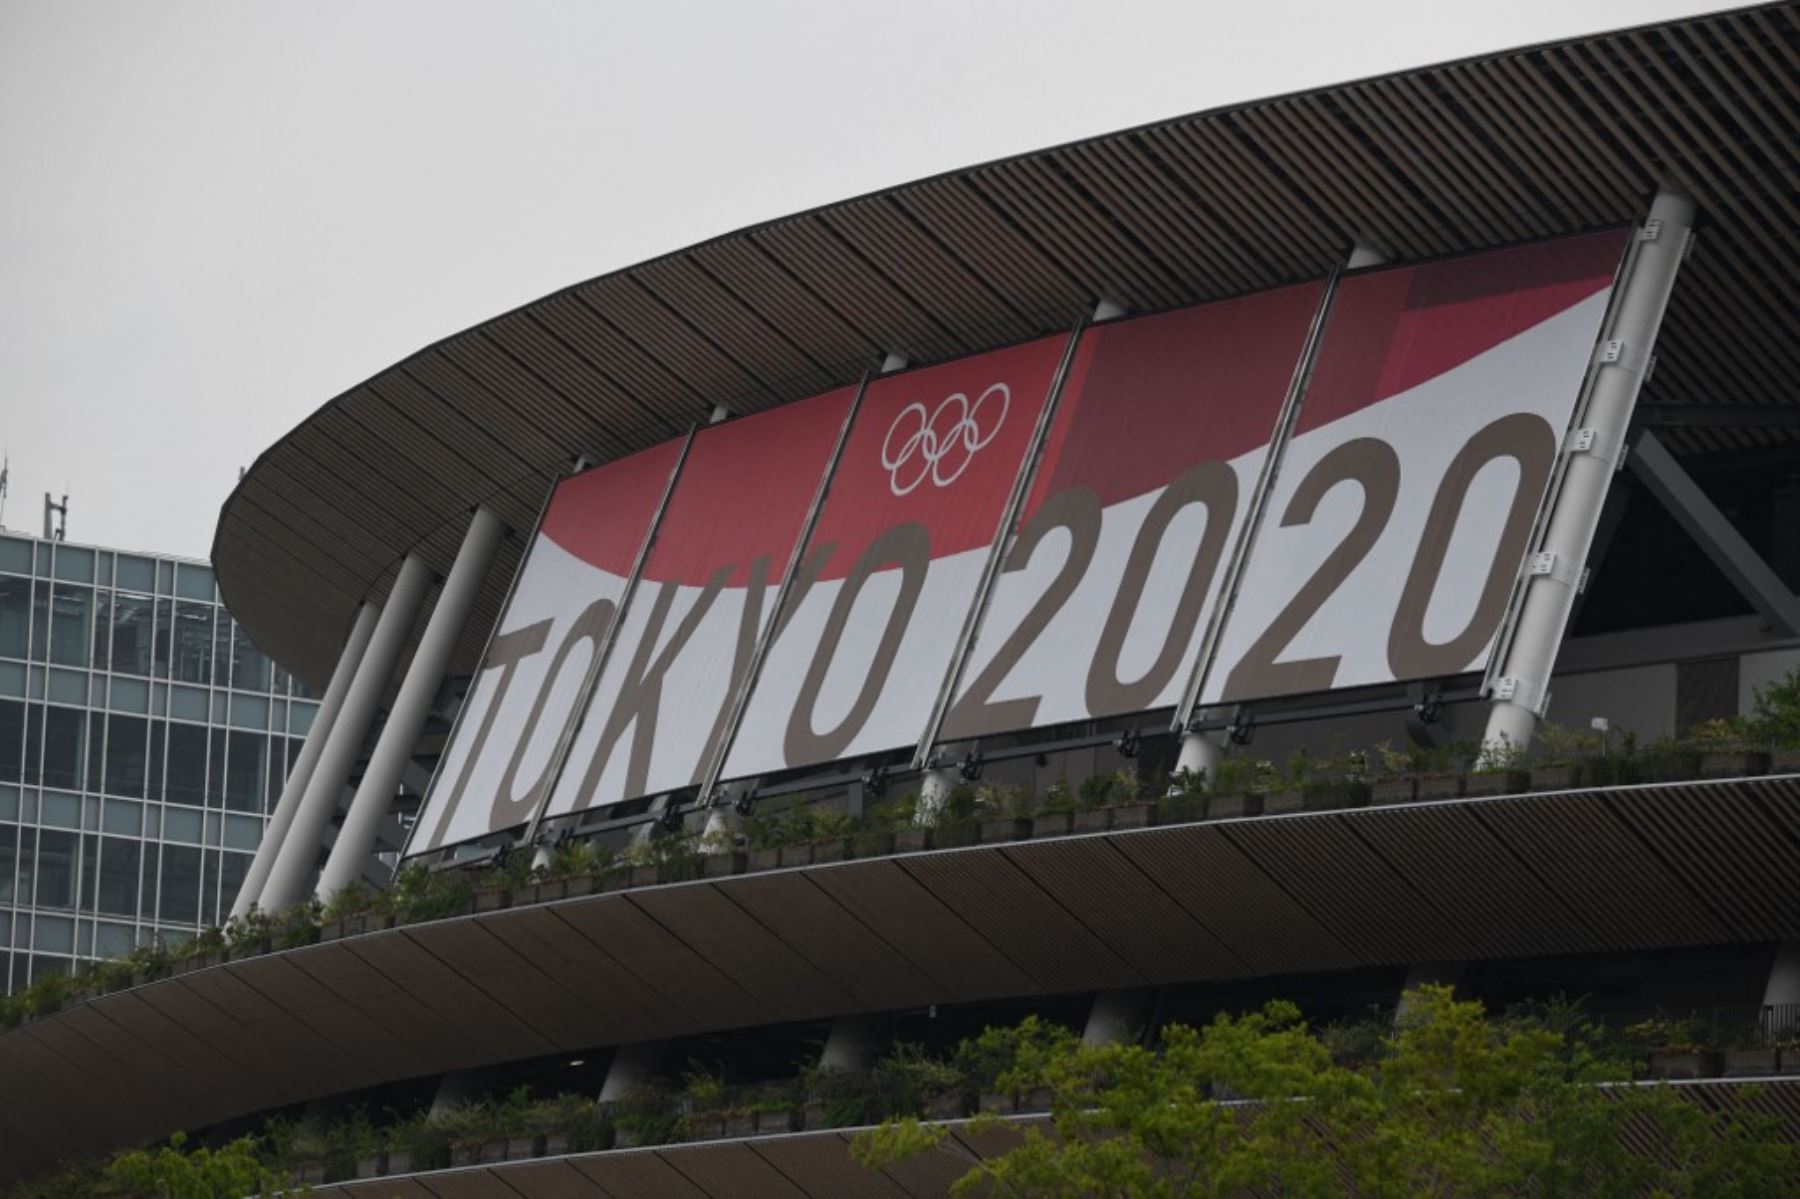 A pocas horas de la inauguración de los Juegos Olímpicos Tokio 2020, el director de la ceremonia de apertura fue cesado